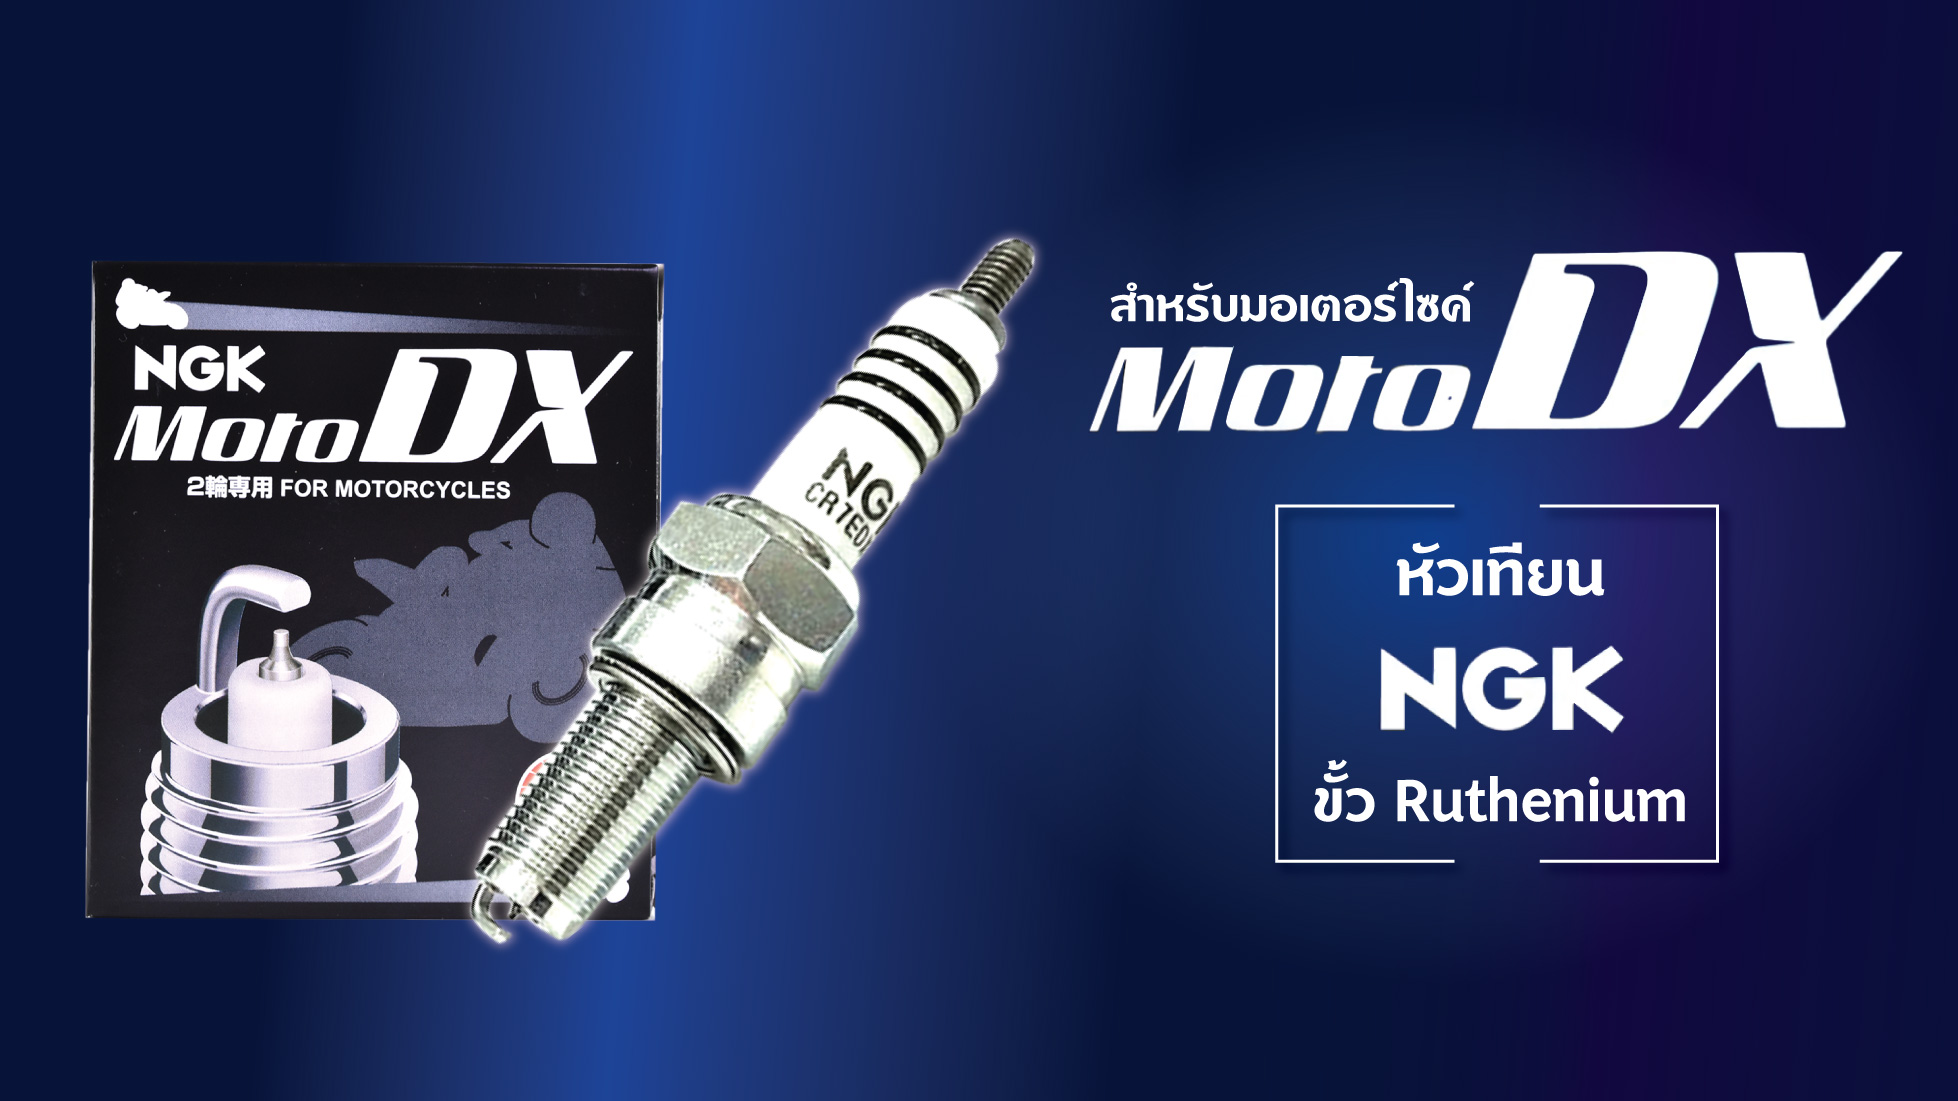 🏍 แนะนำคุณสมบัติ และรุ่นหัวเทียน NGK MotoDX สำหรับมอเตอร์ไซค์